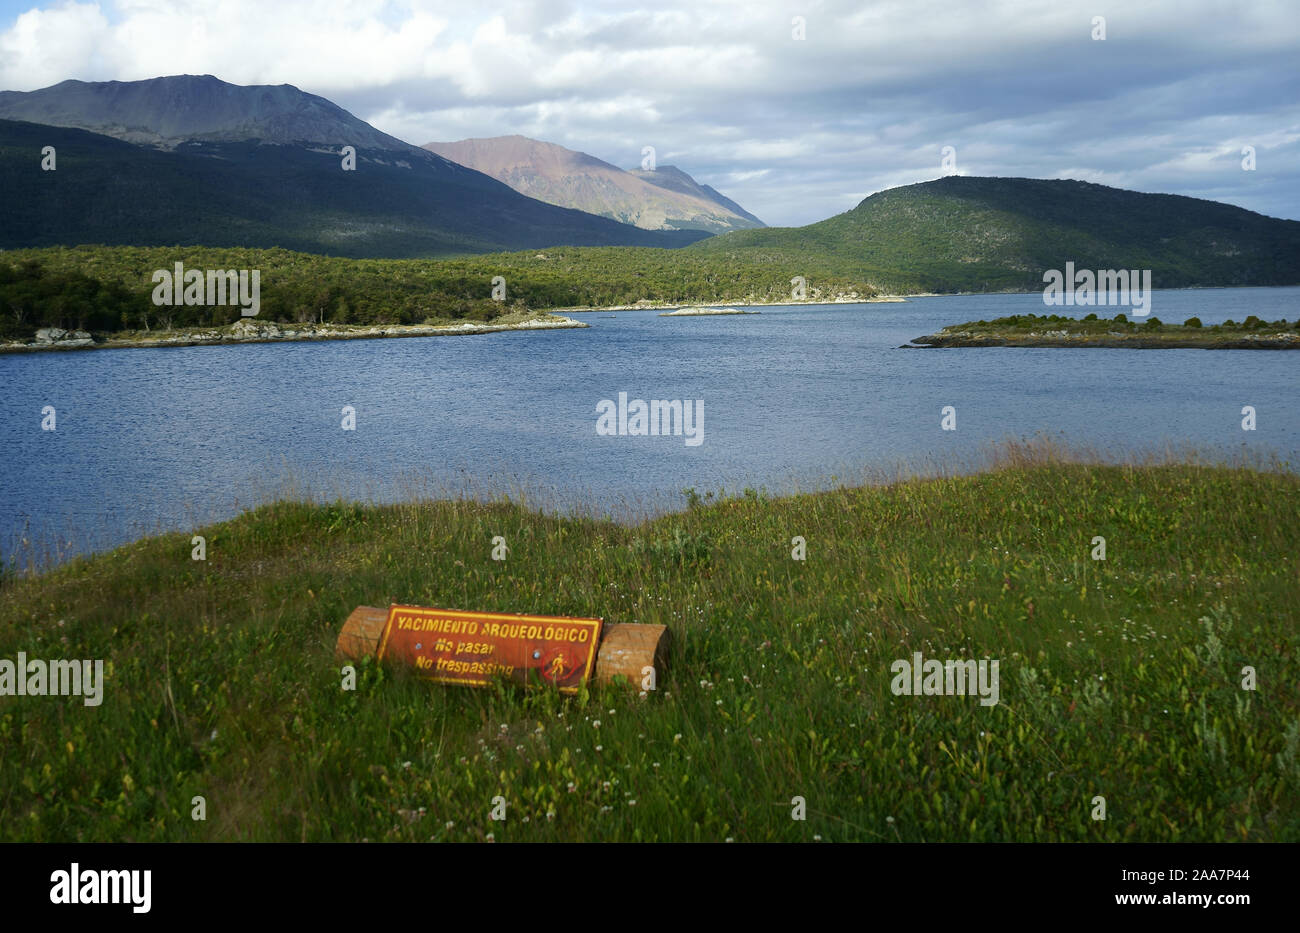 Bahía Lapataia sitio arqueológico con signo, el Parque Nacional Tierra del Fuego, Argentina Foto de stock